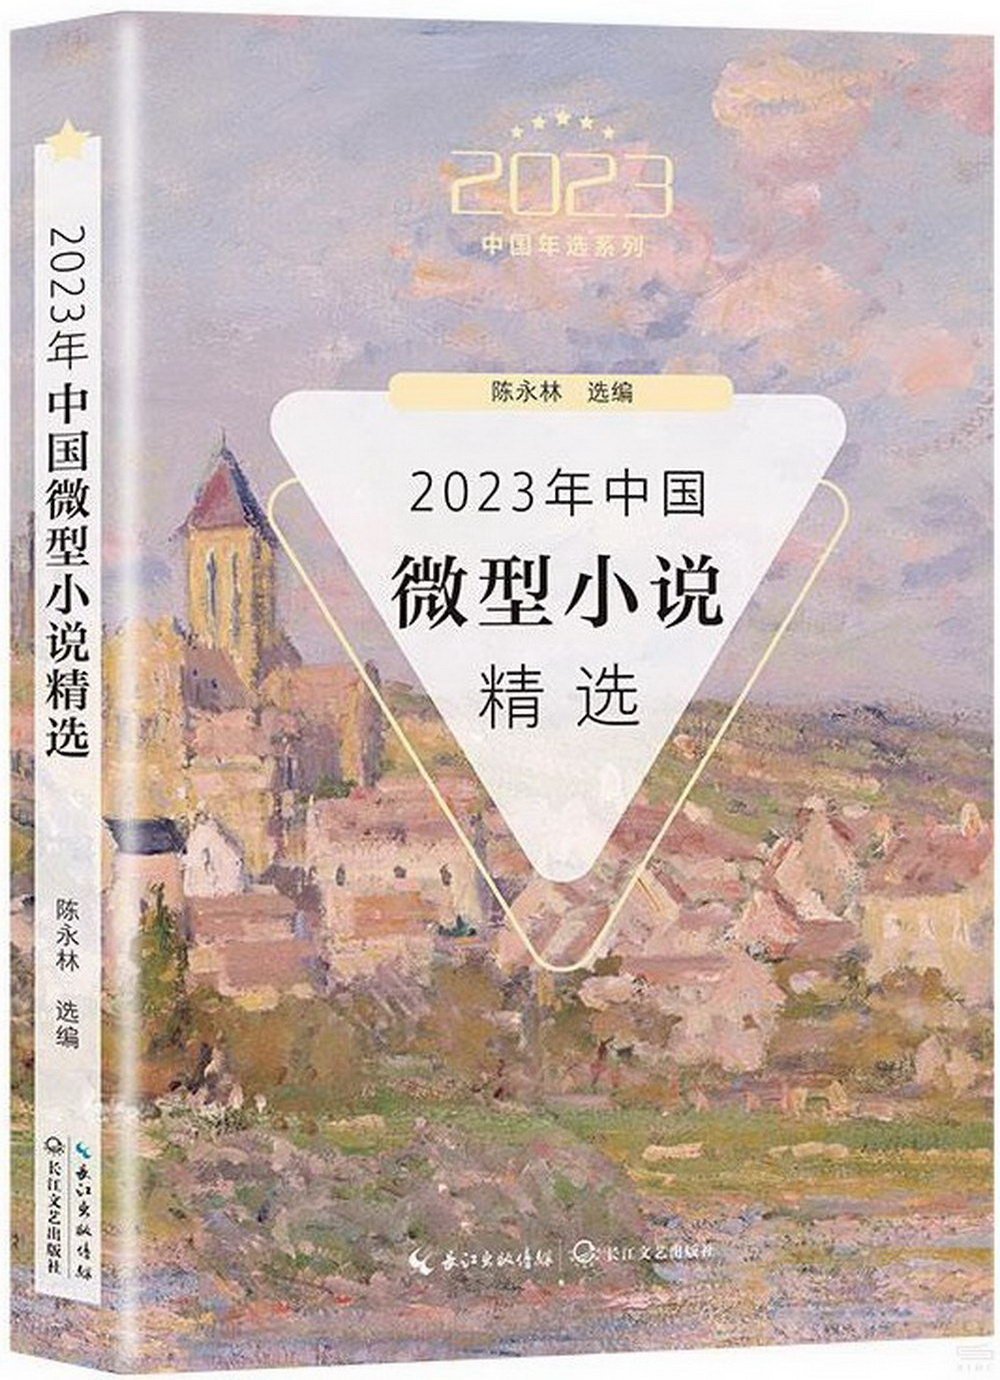 2023年中國微型小說精選